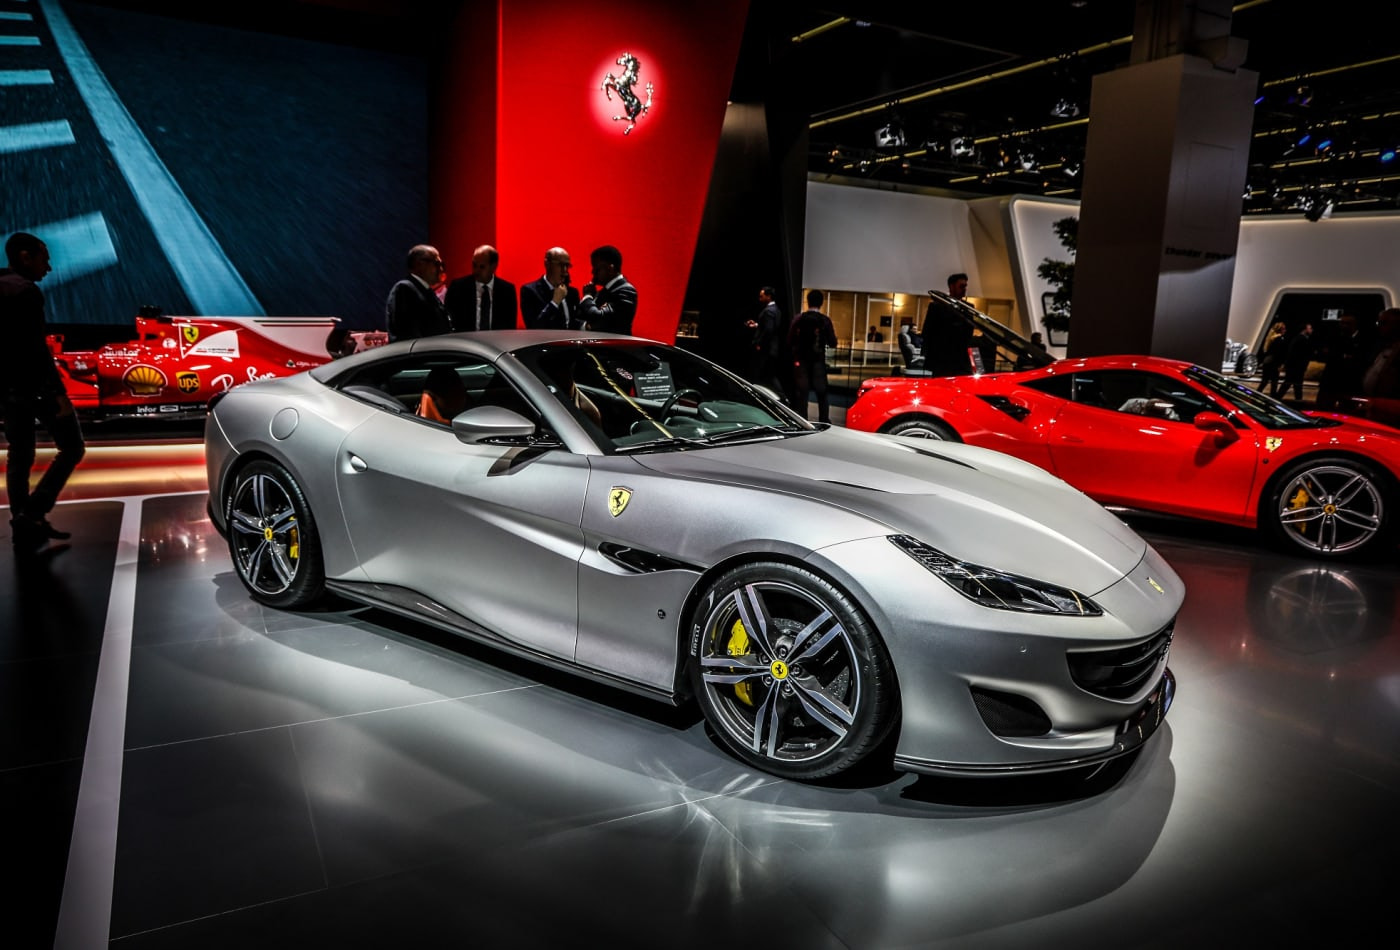 Ferrari Portofino Rental in Dubai |tripzy.ae